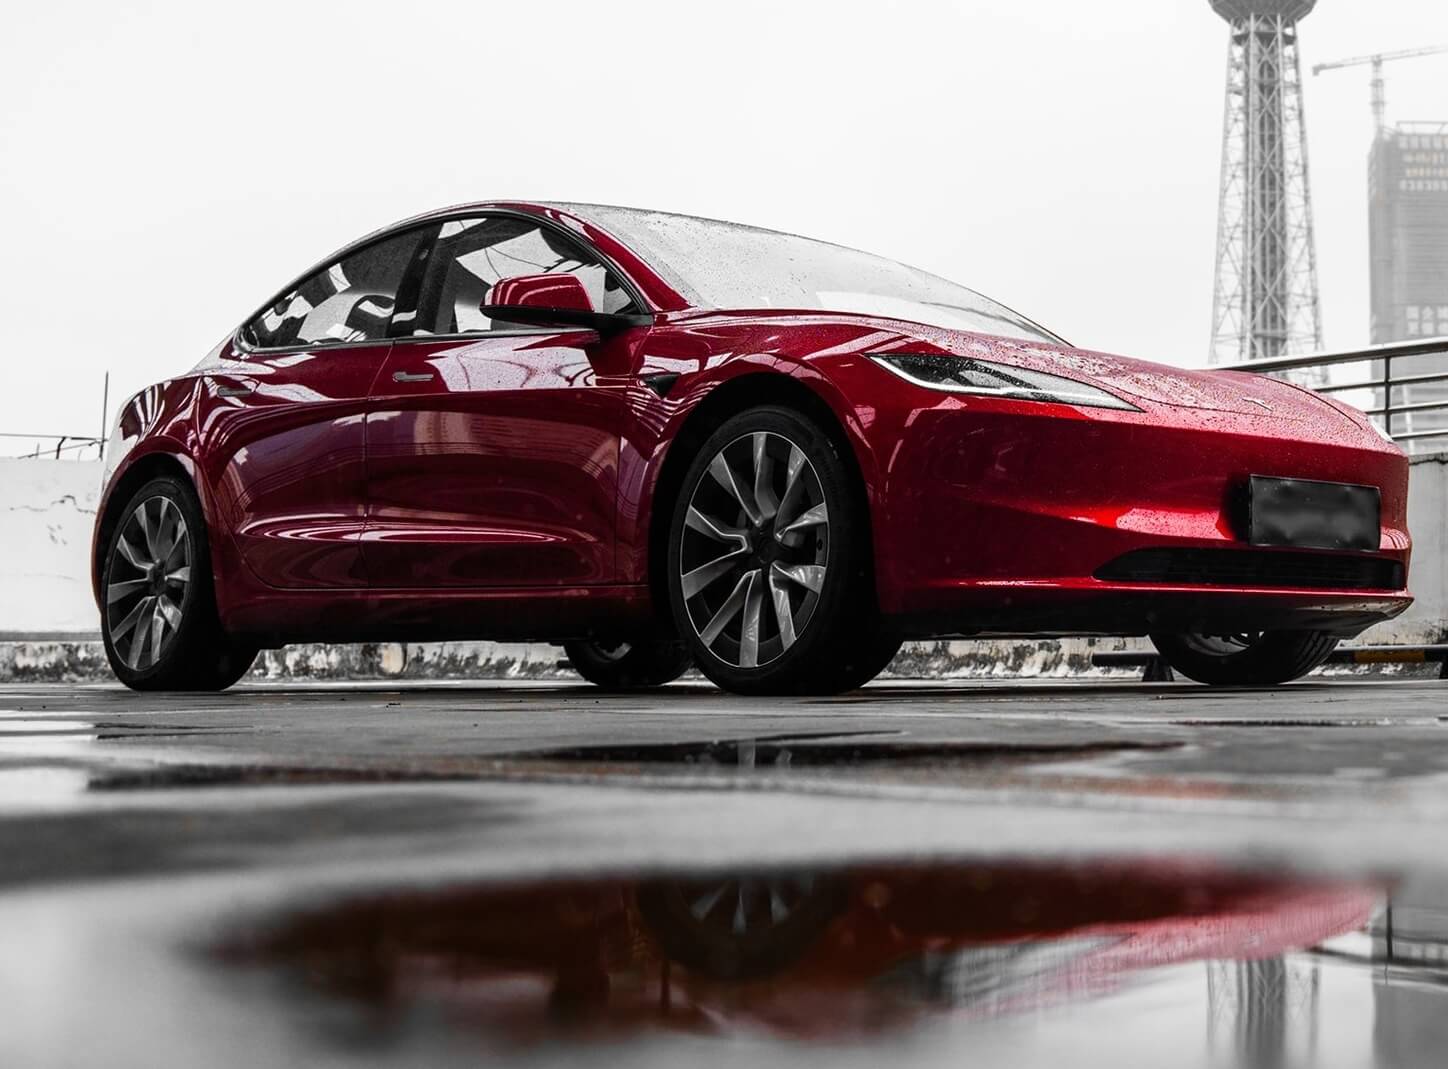 Предполагаемые даты поставки обновленной Tesla Model 3 обновлены в США